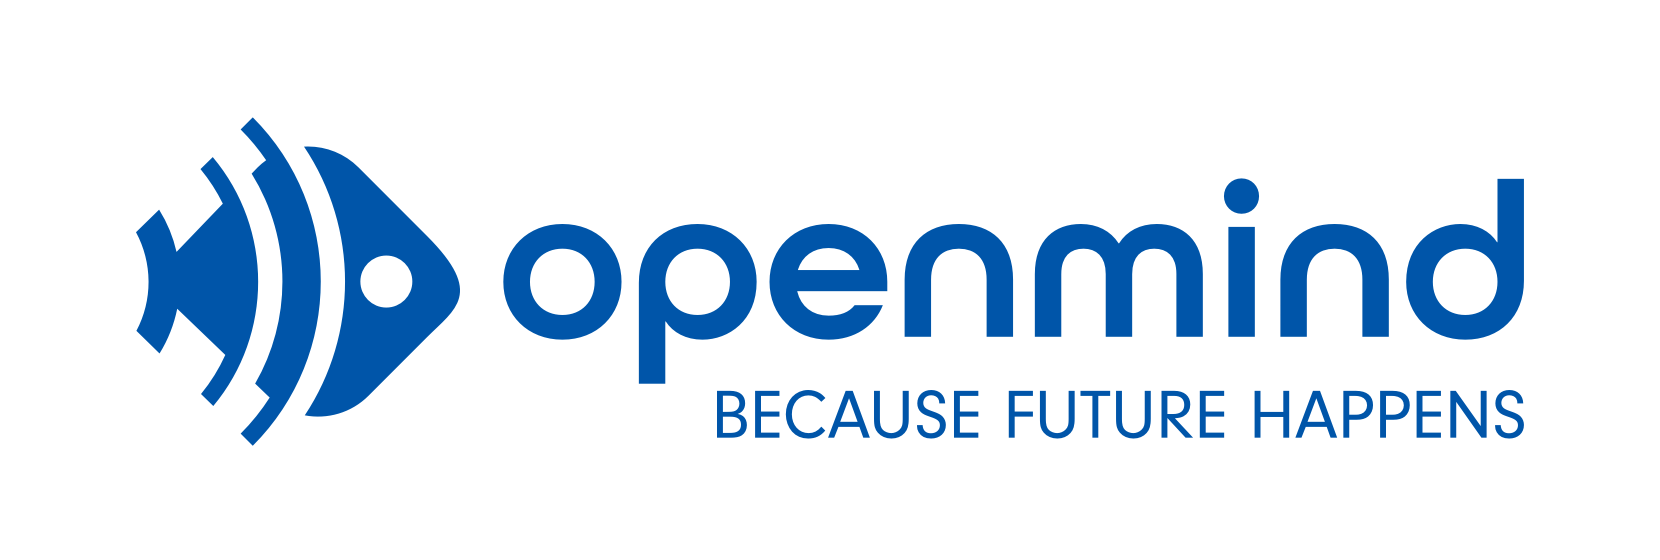 logo-openmind-2020-03-09